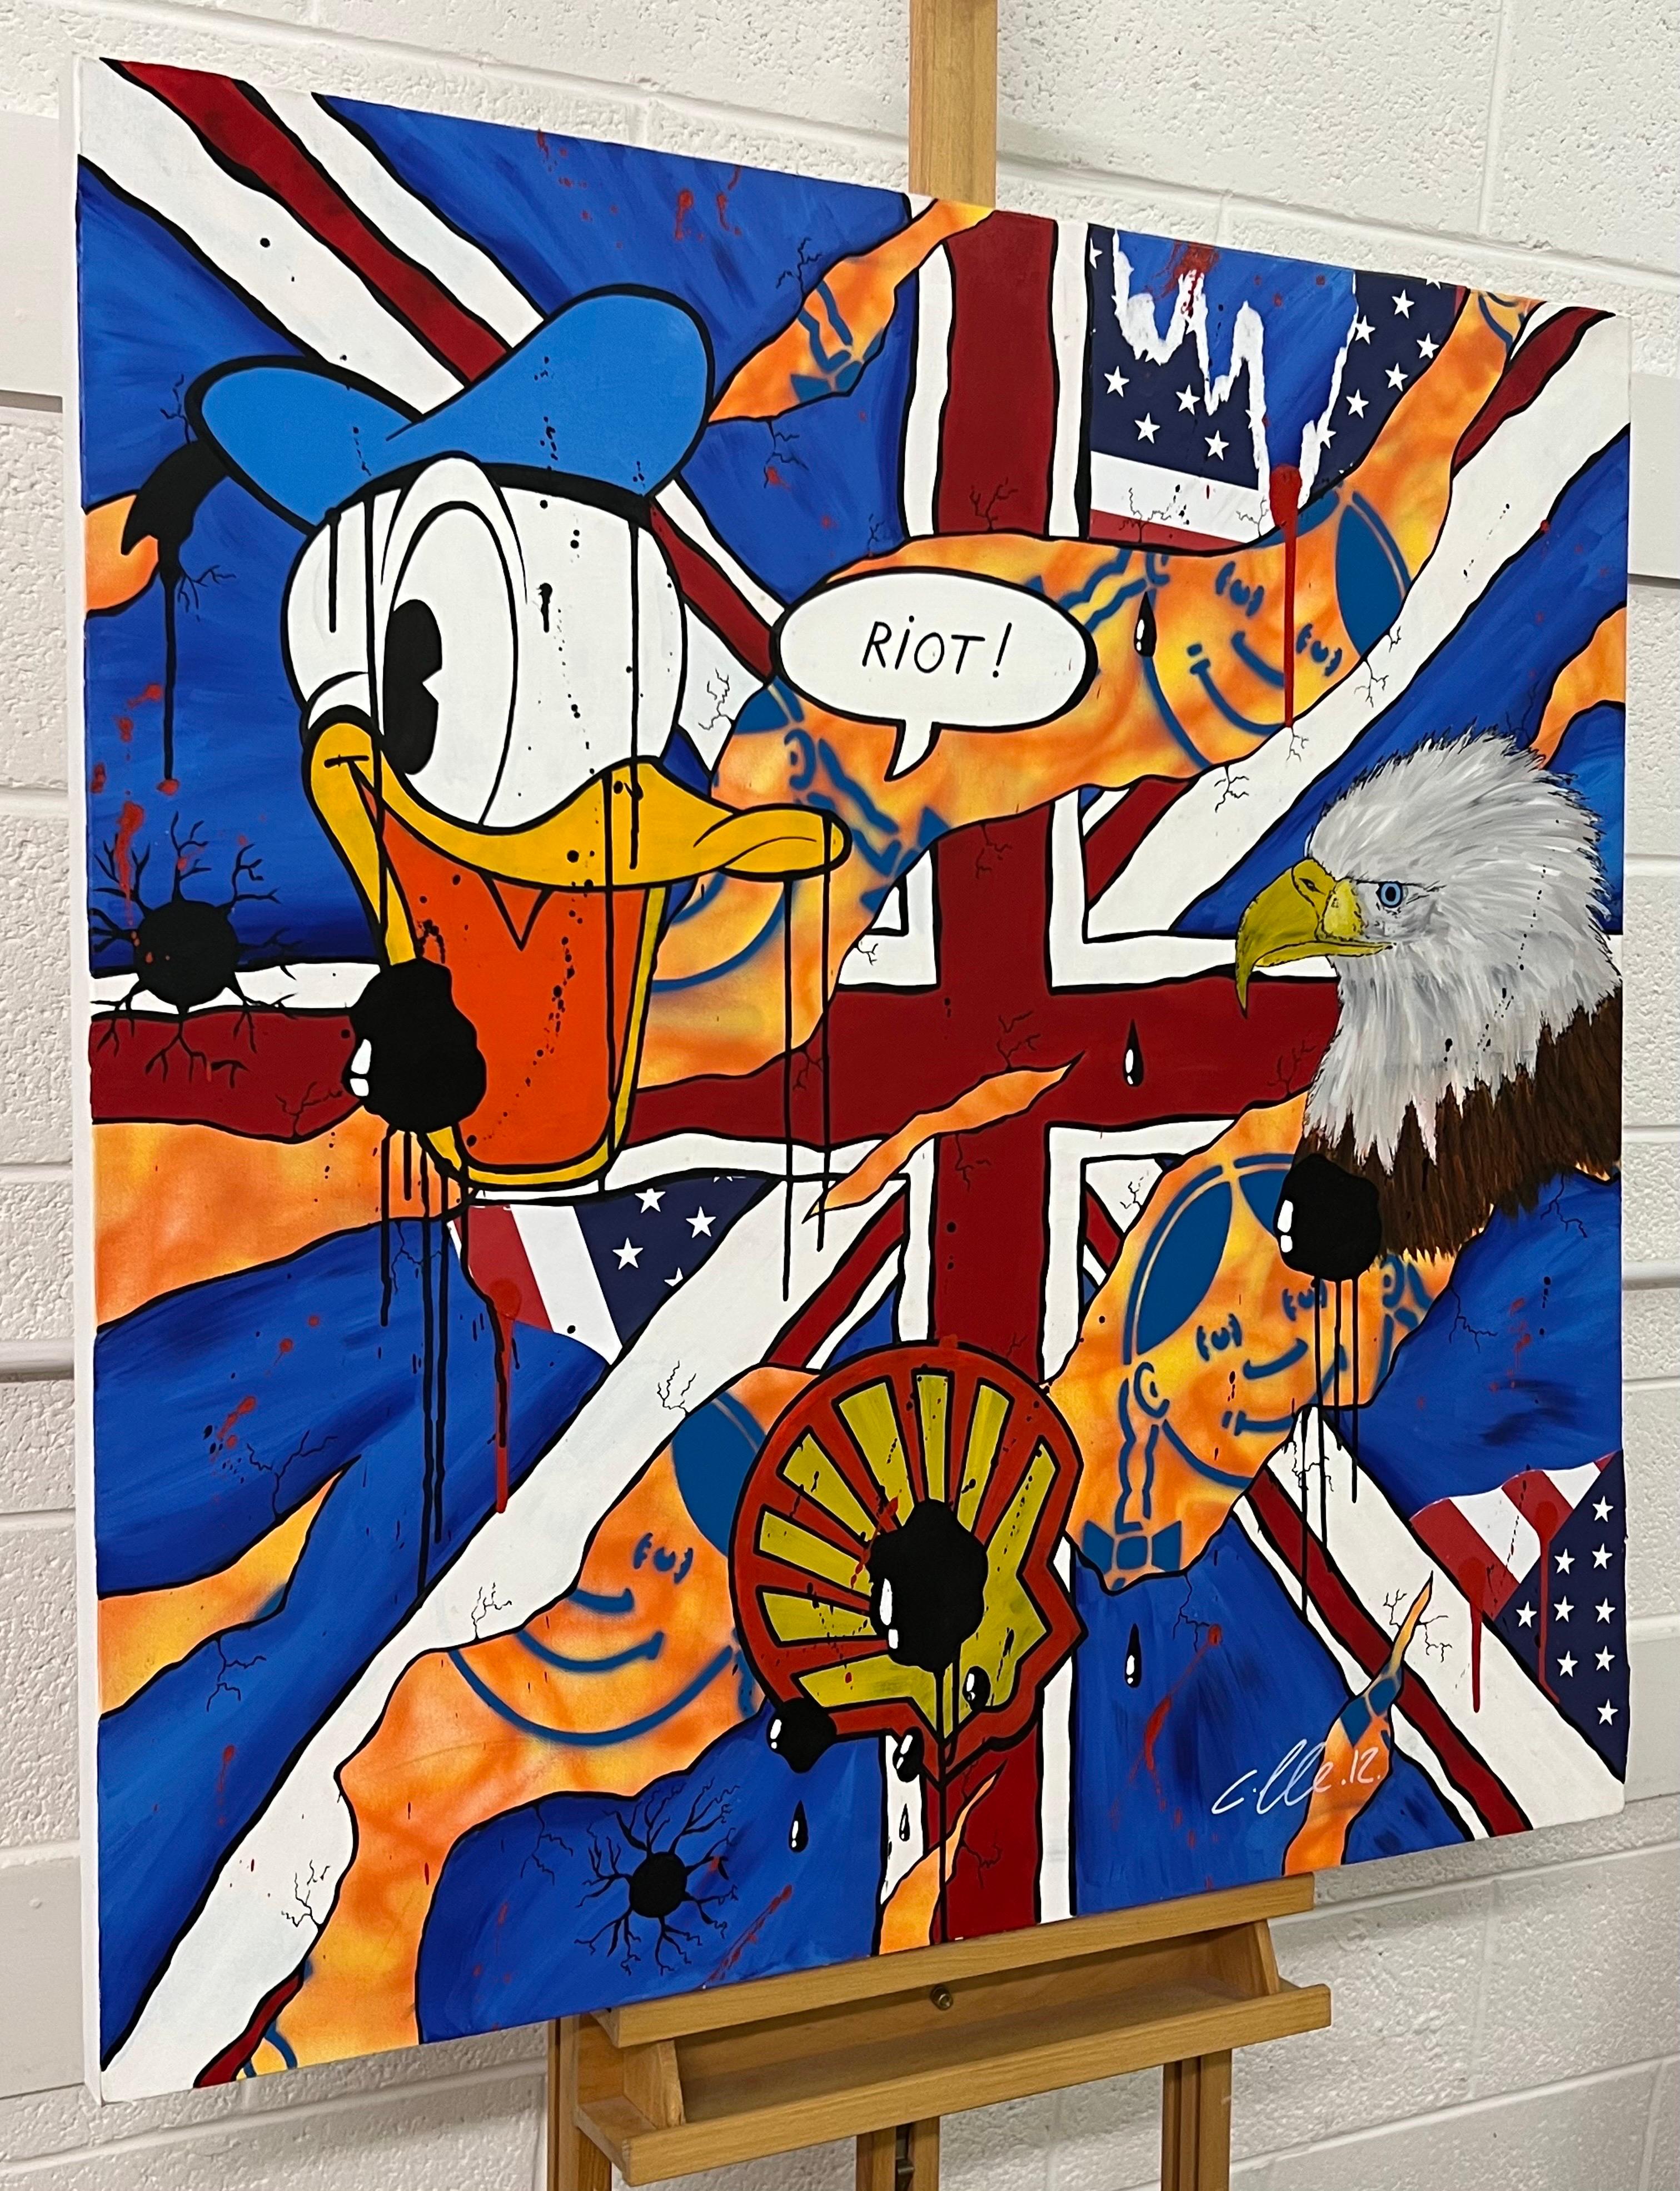 Donald Duck & Shell Oil Cartoon Zeitgenössische Pop Art des britischen Urban Graffiti Künstlers Chris Pegg mit dem Titel 'Riot'. Chris Pegg ist ein autodidaktischer Street Artist, der Kunstwerke mit einem starken sozialen Kommentar produziert. 